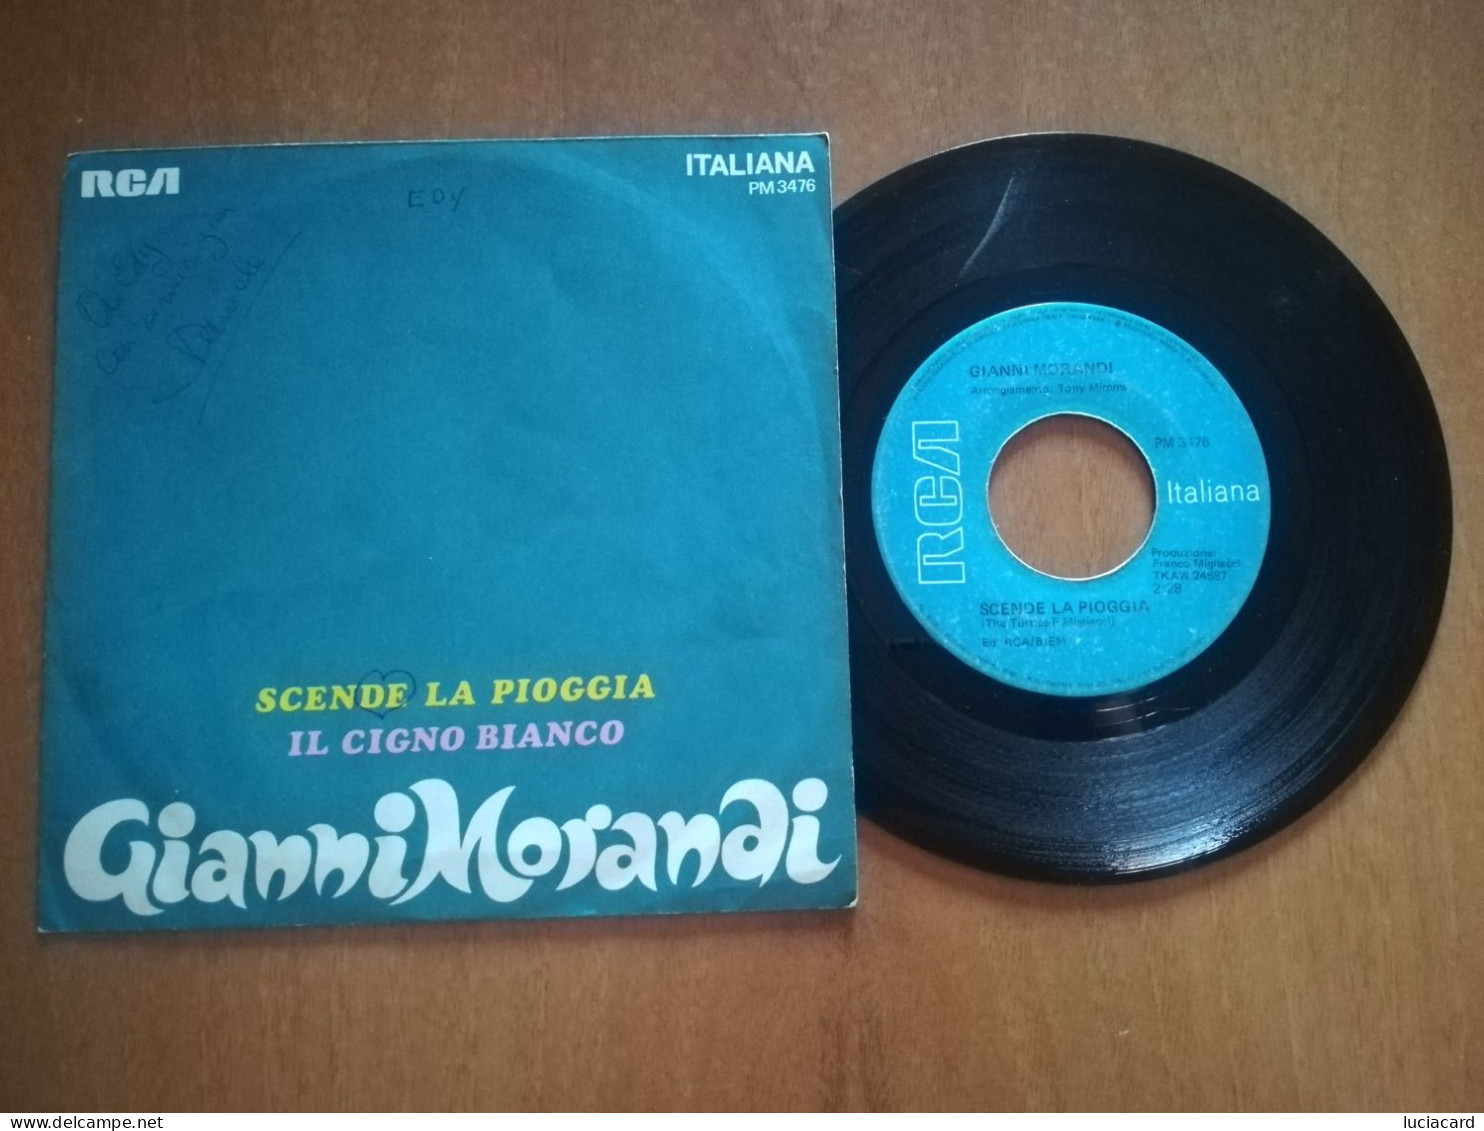 GIANNI MORANDI -SCENDE LA PIOGGIA -IL CIGNO BIANCO -DISCO VINILE 45 GIRI VINTAGE - Other - Italian Music